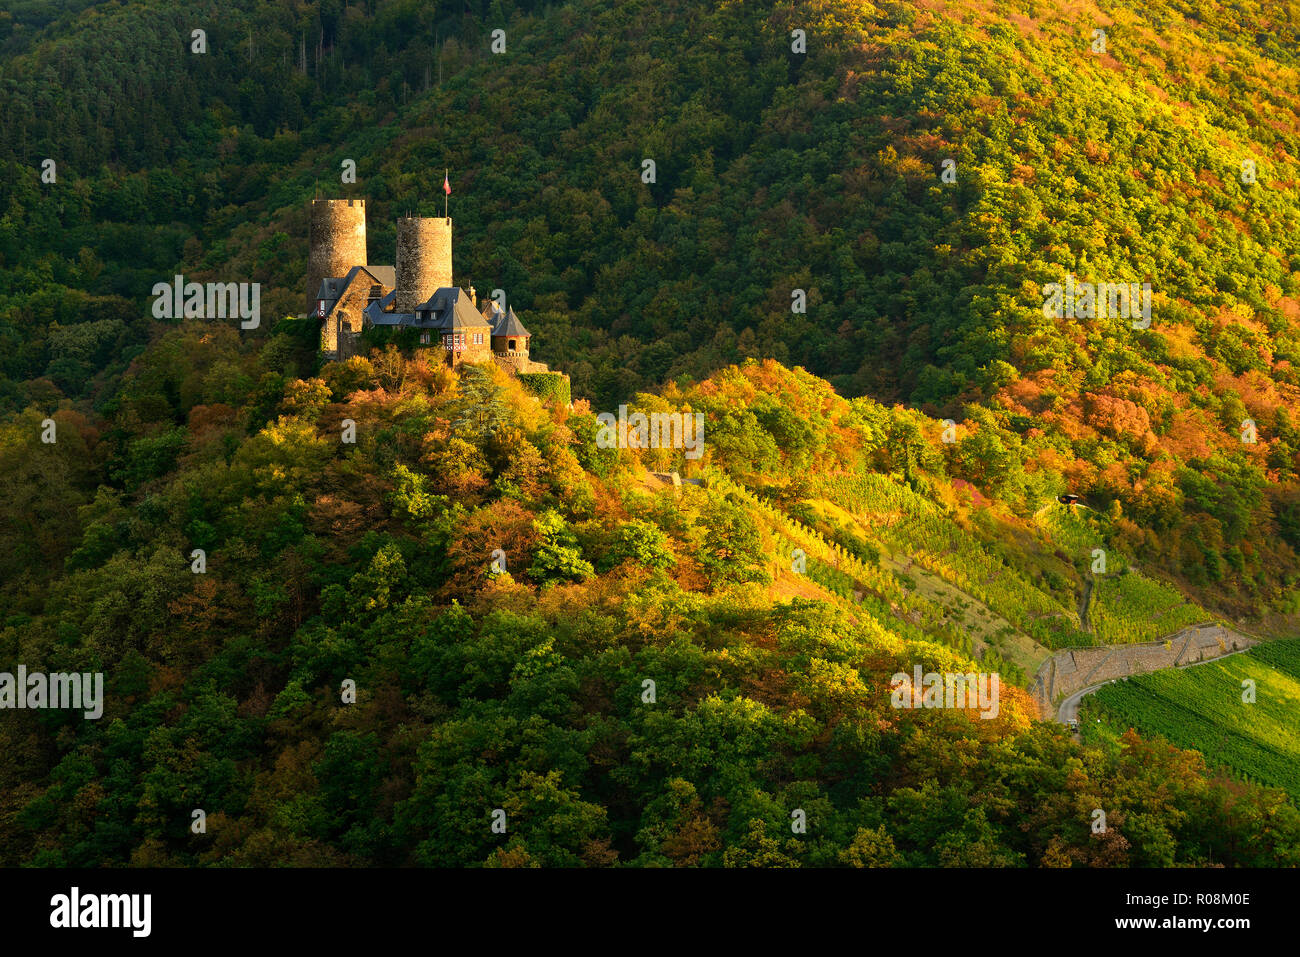 Burg Thurant durch Wälder und Weinberge im Herbst umgeben, Abendlicht, Alken, Mosel, Rheinland-Pfalz, Deutschland Stockfoto